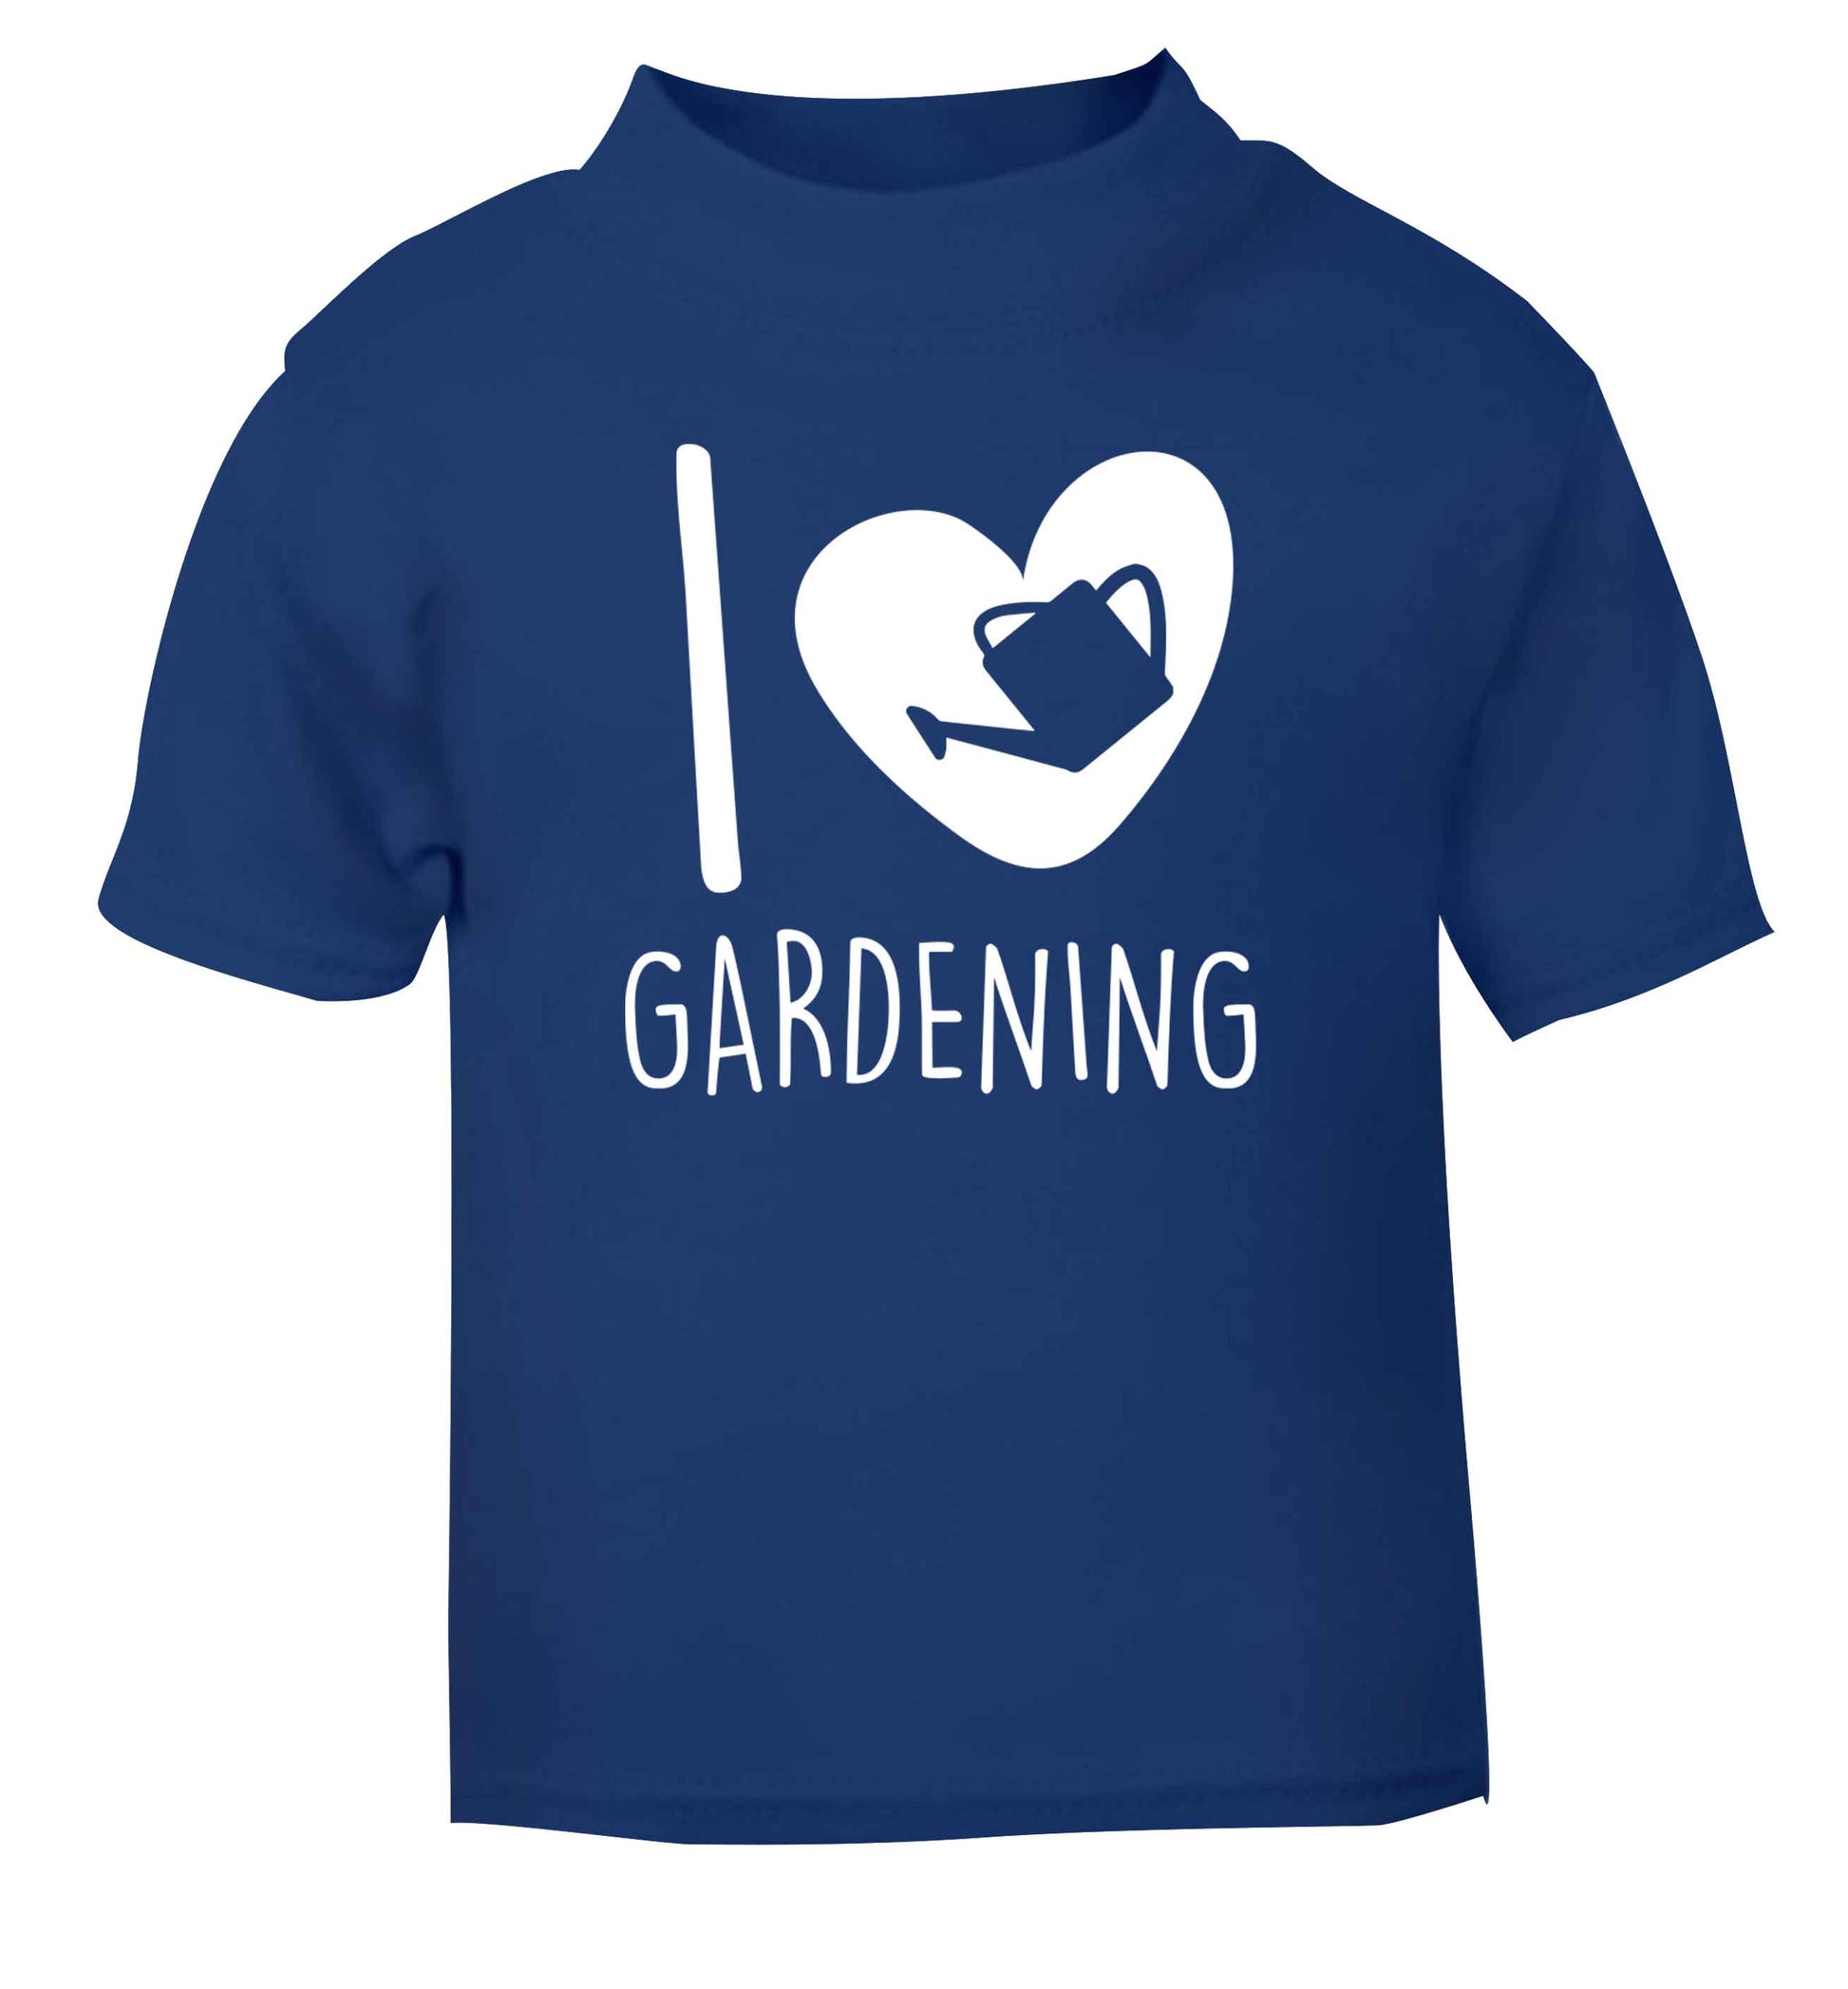 I love gardening blue Baby Toddler Tshirt 2 Years